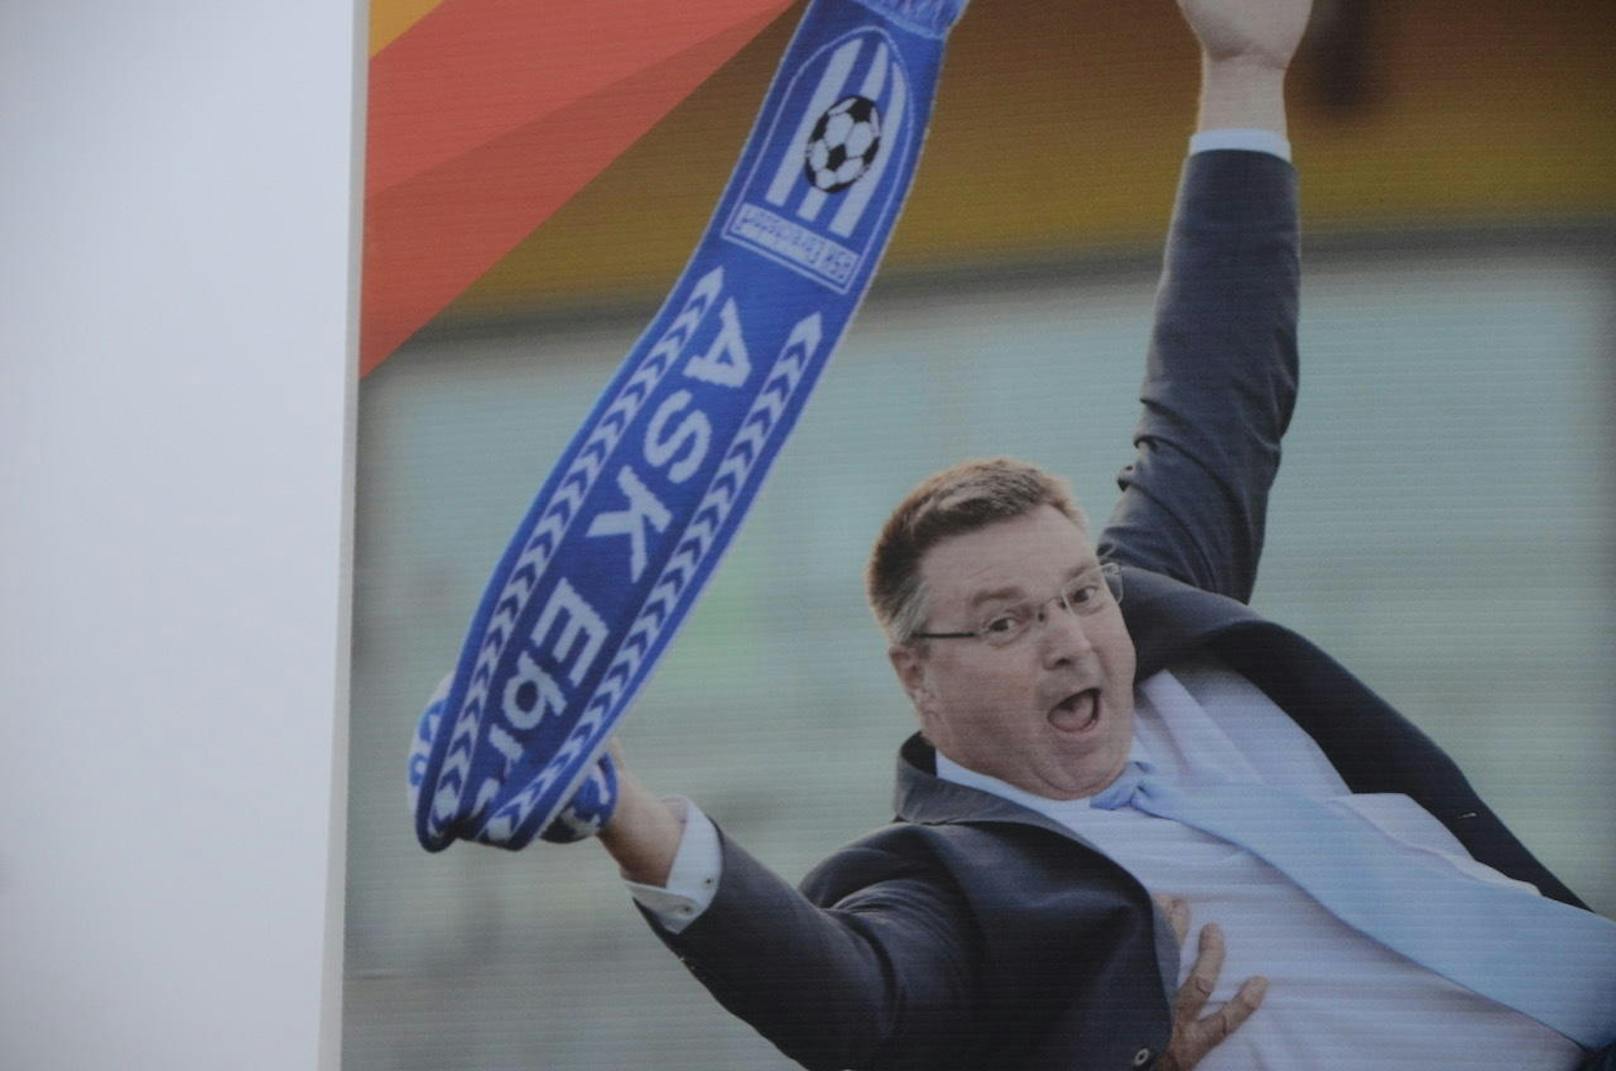 Wolfgang Kocevar zeigt sich auf seinen Wahlplakaten mit Mitgliedern von Sportvereinen. Das bringt ihm Kritik von sämtlichen anderen Parteien ein.